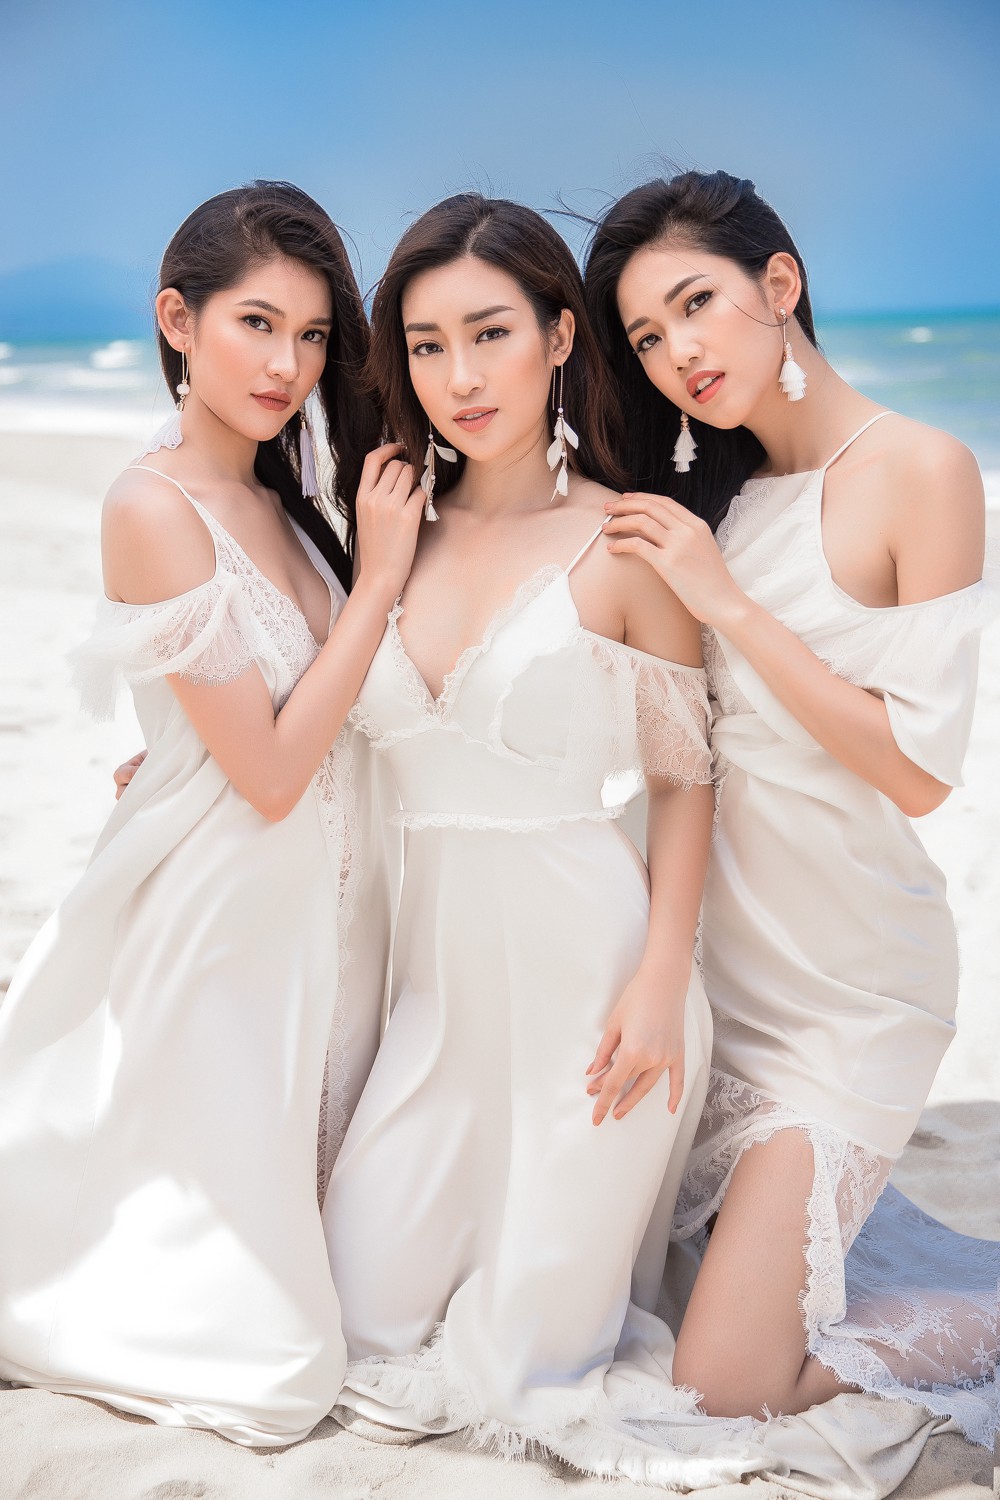 Ghen tỵ với bộ ảnh đẹp lung linh của Hội bạn thân Hoa hậu Mỹ Linh - Thùy Dung - Thanh Tú - Ảnh 3.